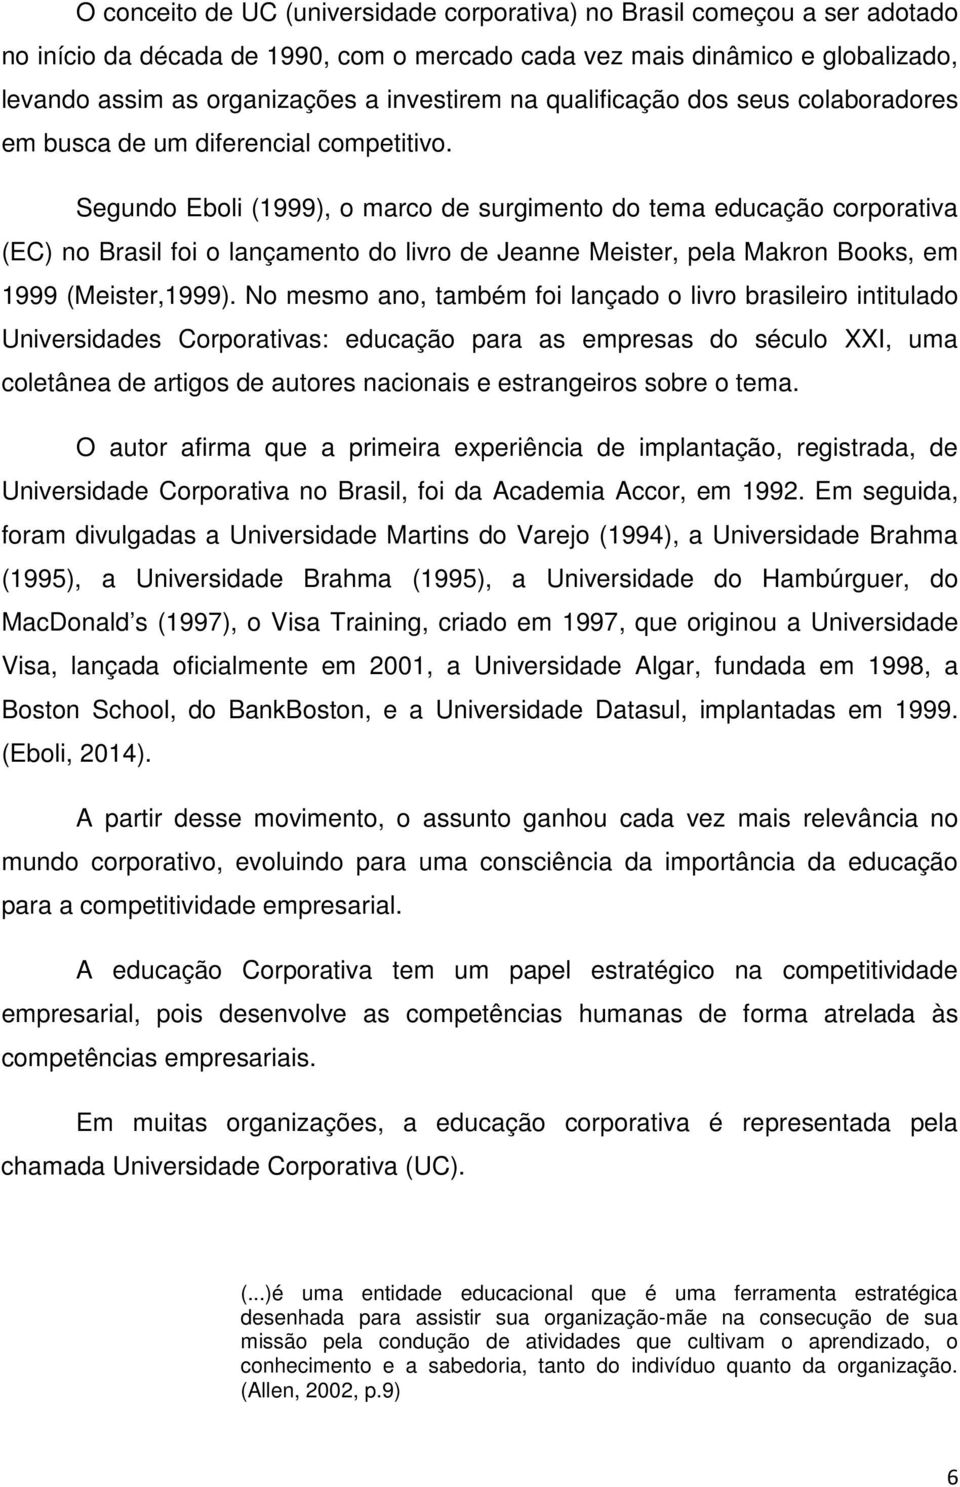 Segundo Eboli (1999), o marco de surgimento do tema educação corporativa (EC) no Brasil foi o lançamento do livro de Jeanne Meister, pela Makron Books, em 1999 (Meister,1999).